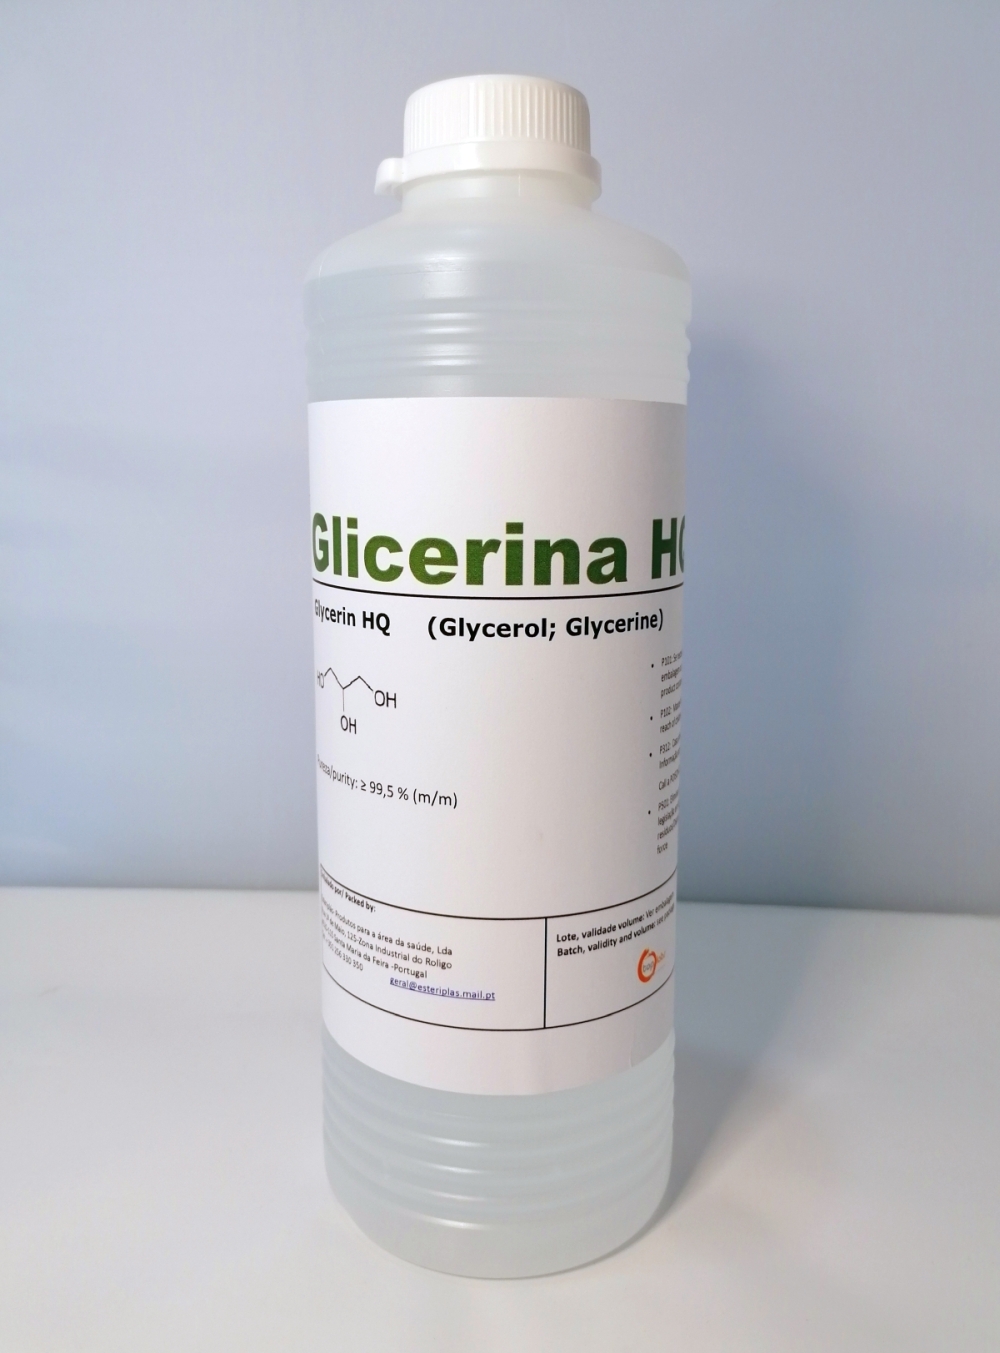 Glicerina Liq. 1 Litro